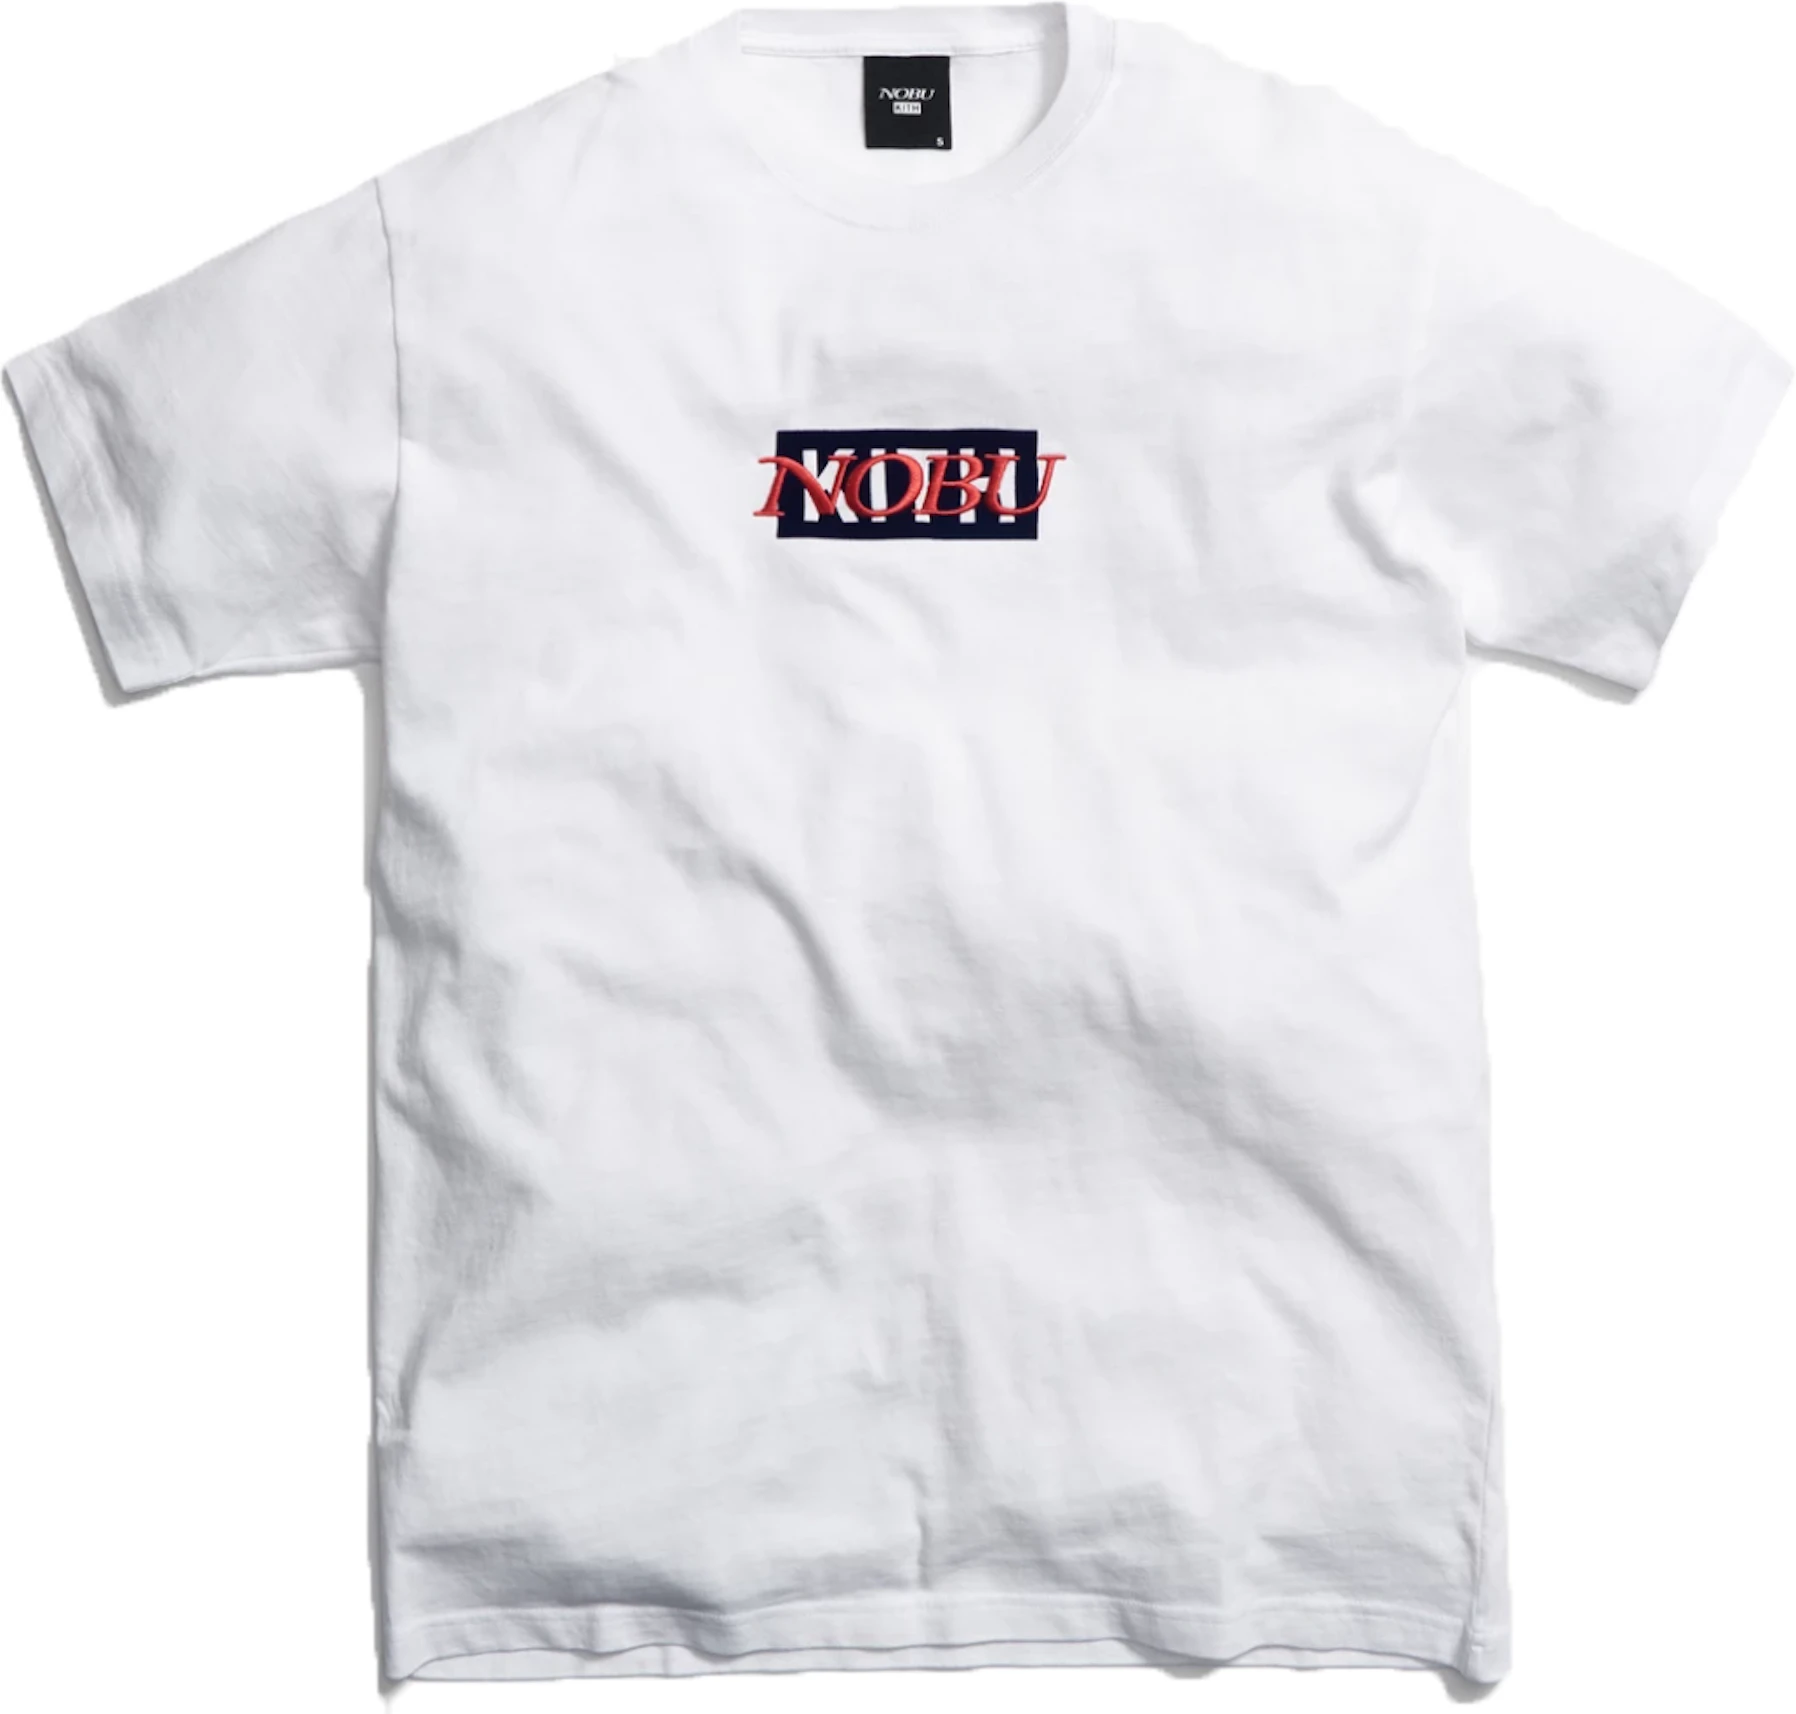 Kith Logos | lupon.gov.ph